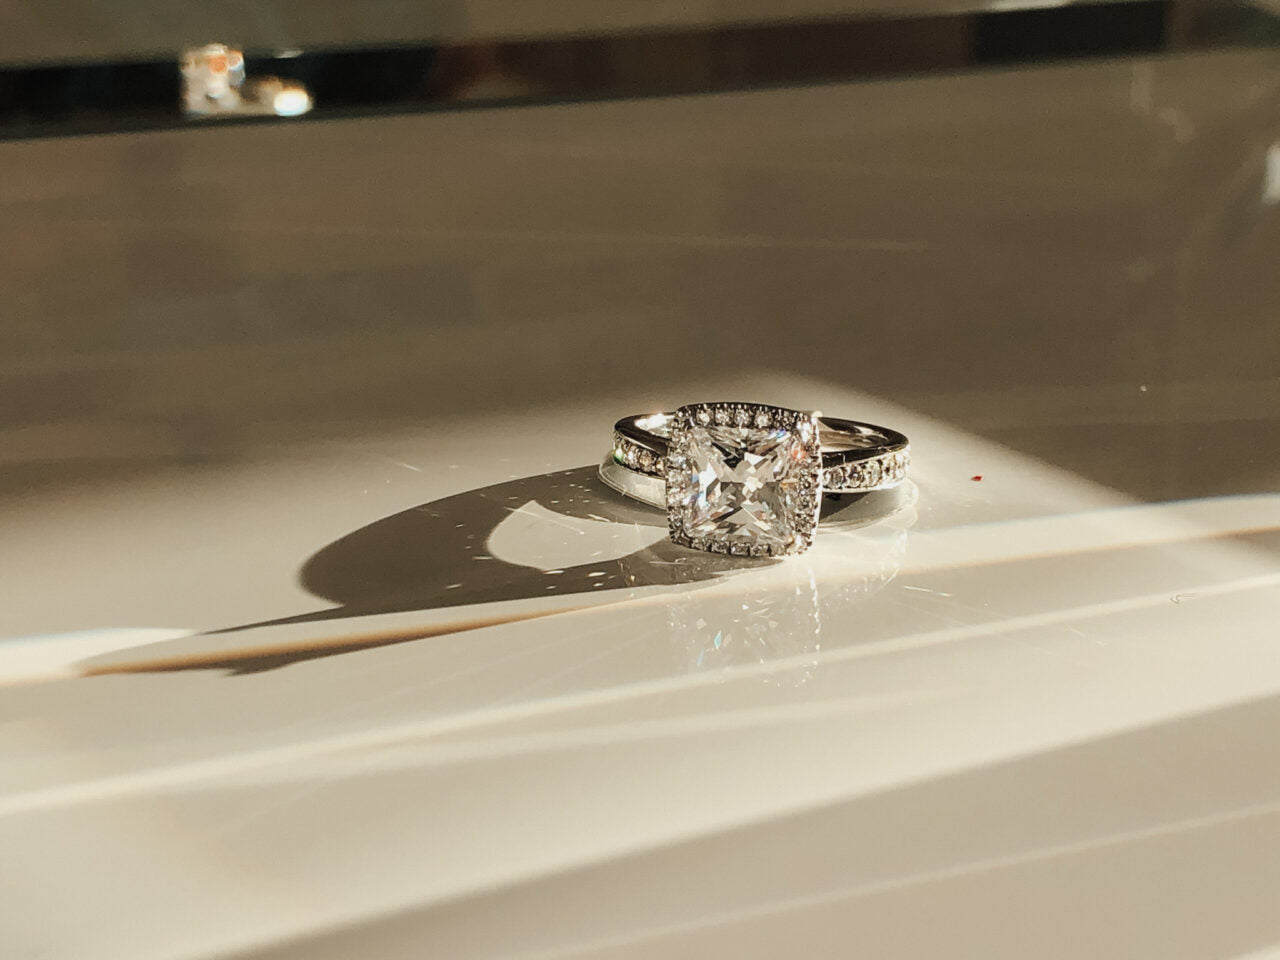 Wir bei Designer Diamonds haben nicht nur eine riesige Auswahl an vorhandene Schmuckstücken, wir designen auch dein neues Traumschmuckstück ganz nach deinen Wünschen. Auf dem Bild ist ein silberner Verlobungsring mit einem Ascher Cut Diamanten zu sehen.